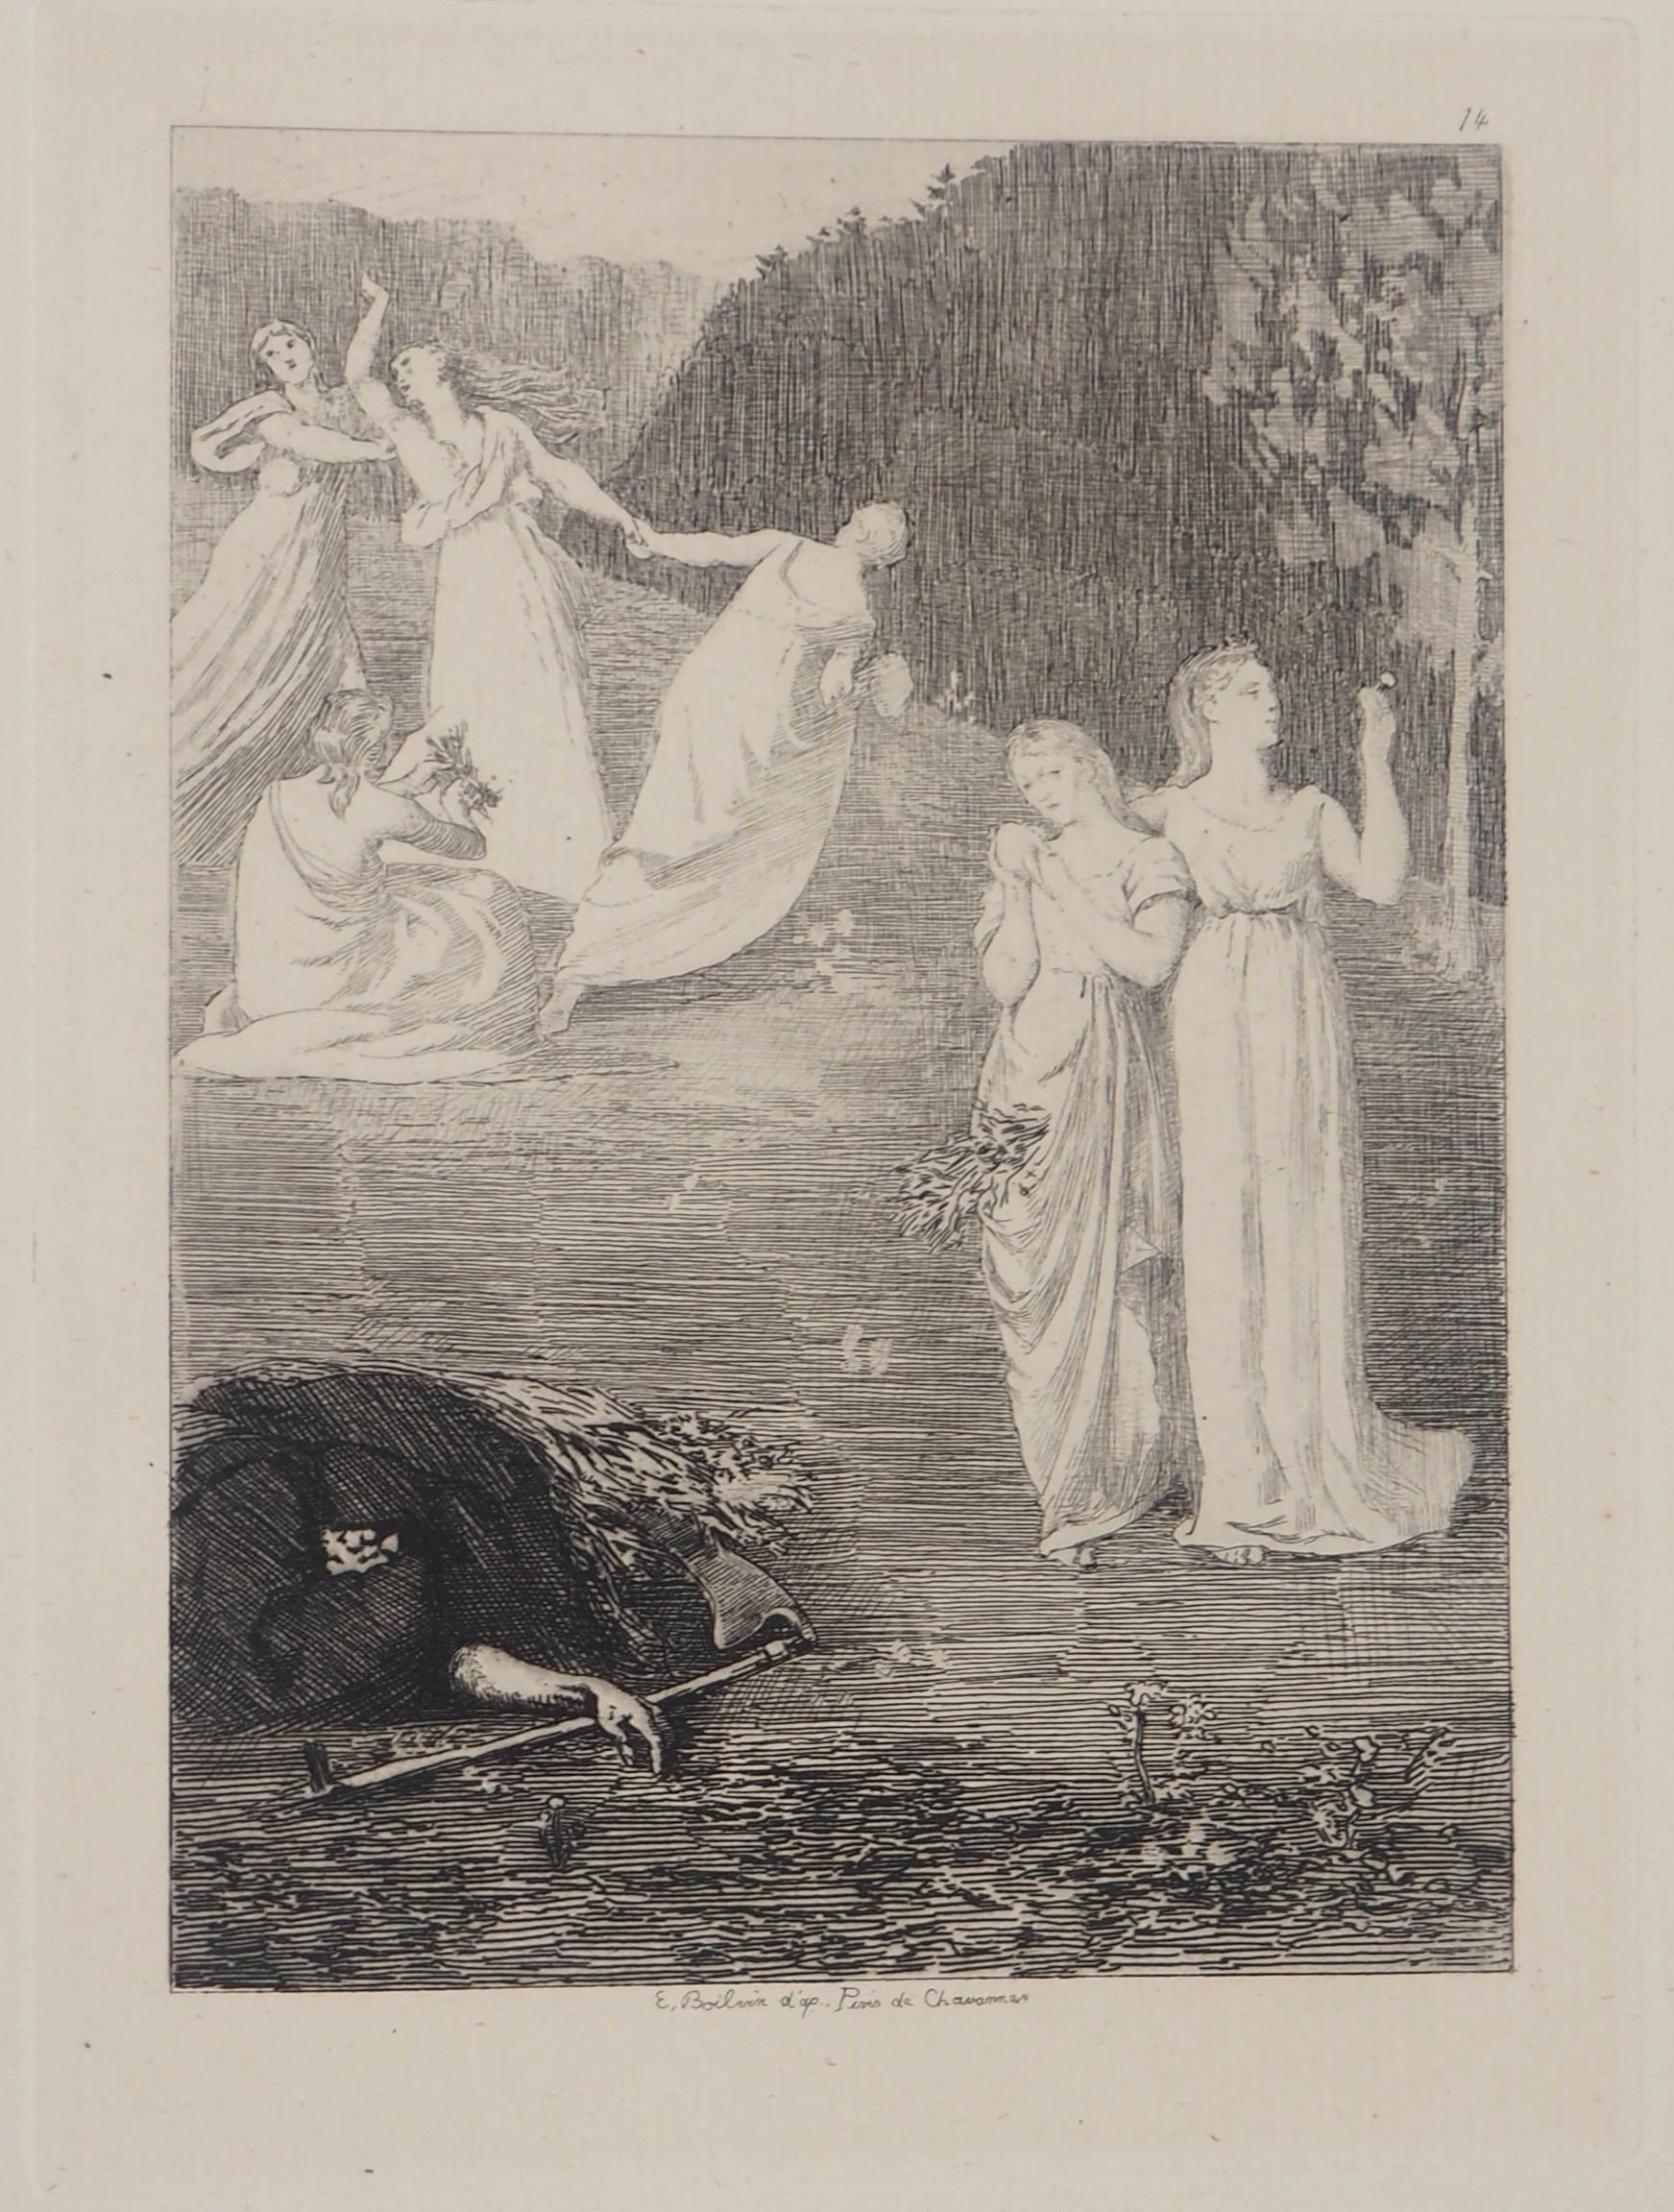 Pierre Puvis de Chavannes Landscape Print - The Reaper : Life and Death - Original etching - Ed. Durand Ruel, 1873